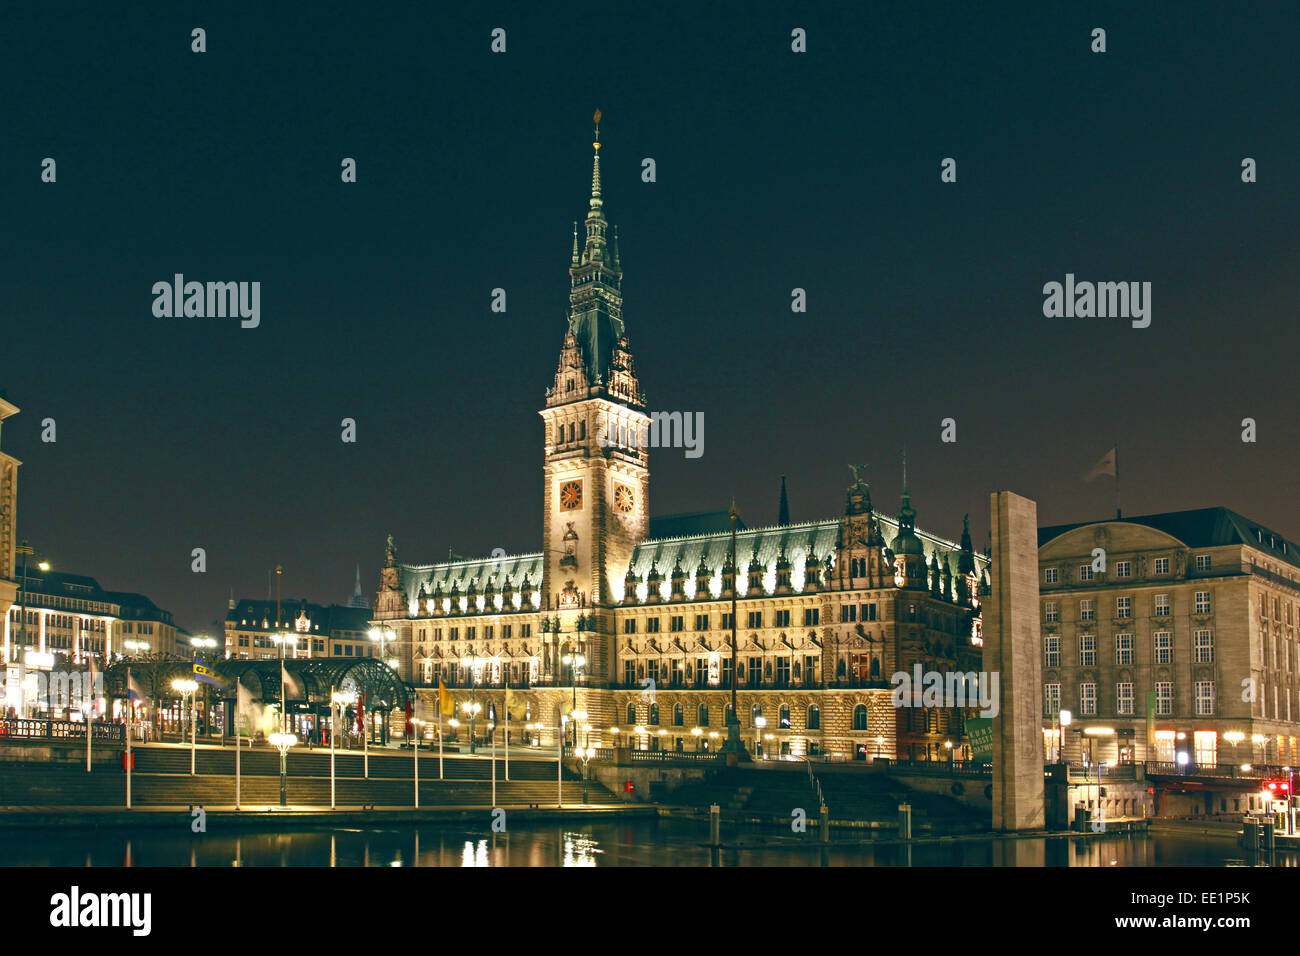 Deutschland, Hamburg, Rathaus, Beleuchtung, Alsterfleet, Abend, Europa, Hansestadt, Hafenstadt, Altstadt, Rathausmarkt, Sehenswu Stock Photo